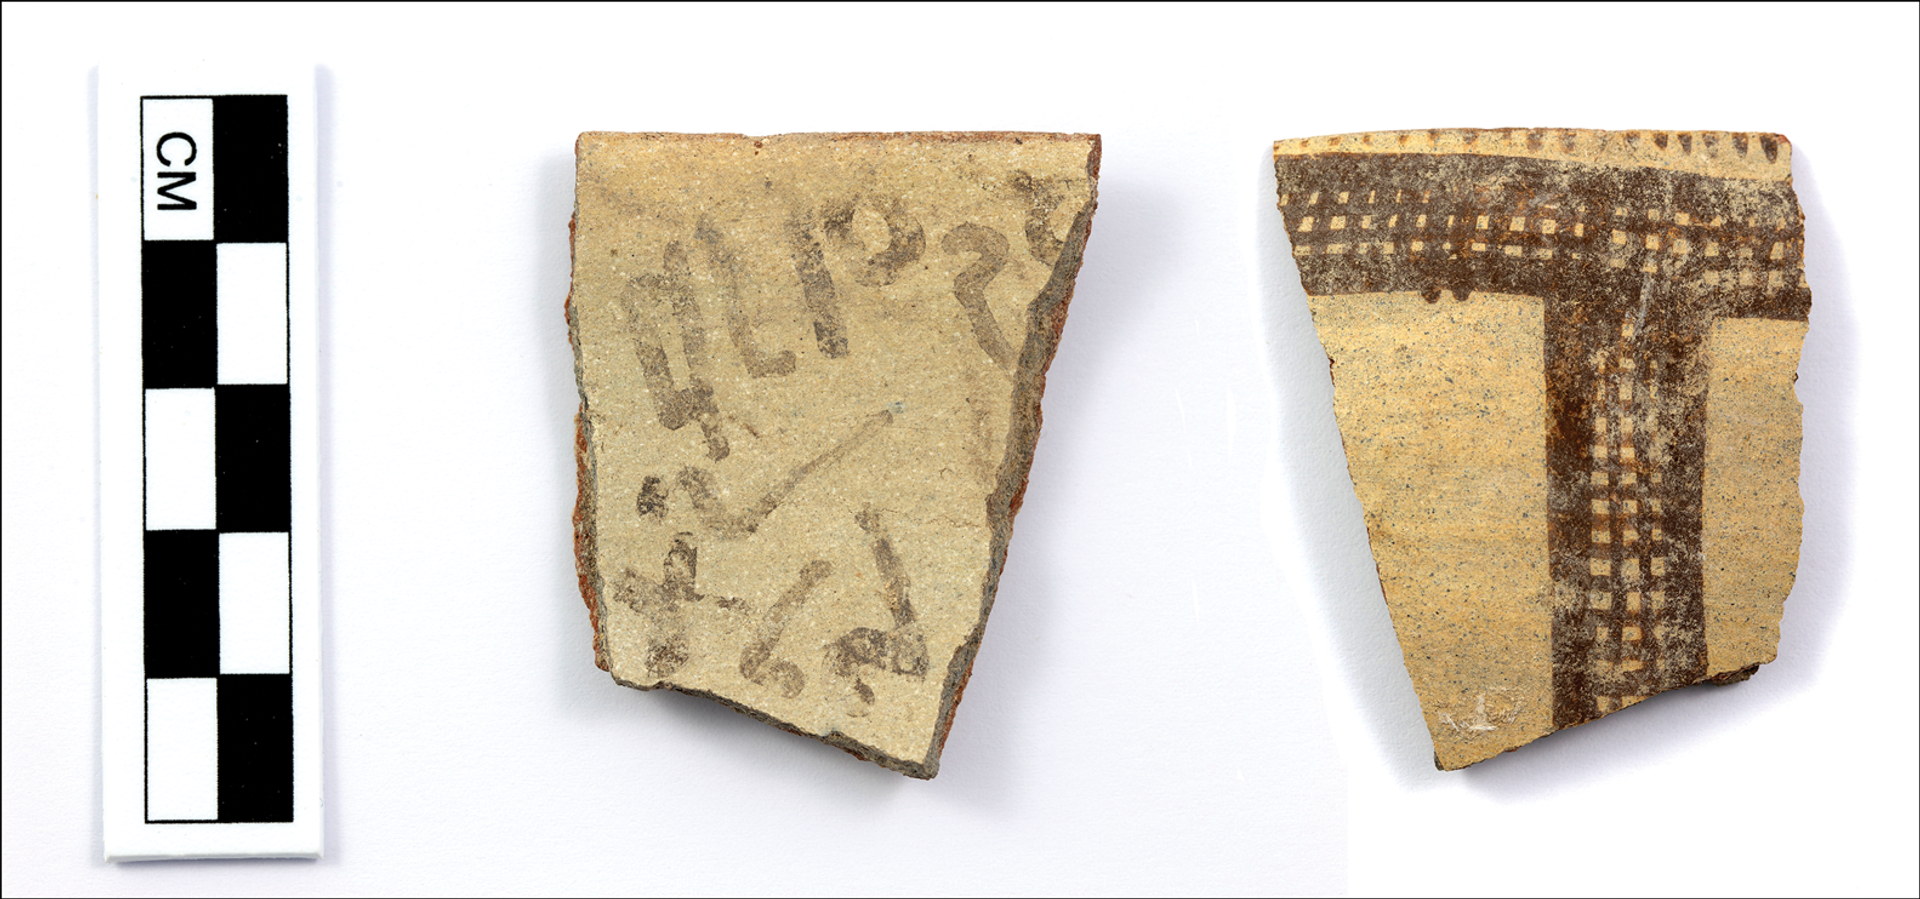 Descoberta mais antiga inscrição de alfabeto desconhecido no Oriente Médio (FOTO) - Sputnik Brasil, 1920, 16.04.2021